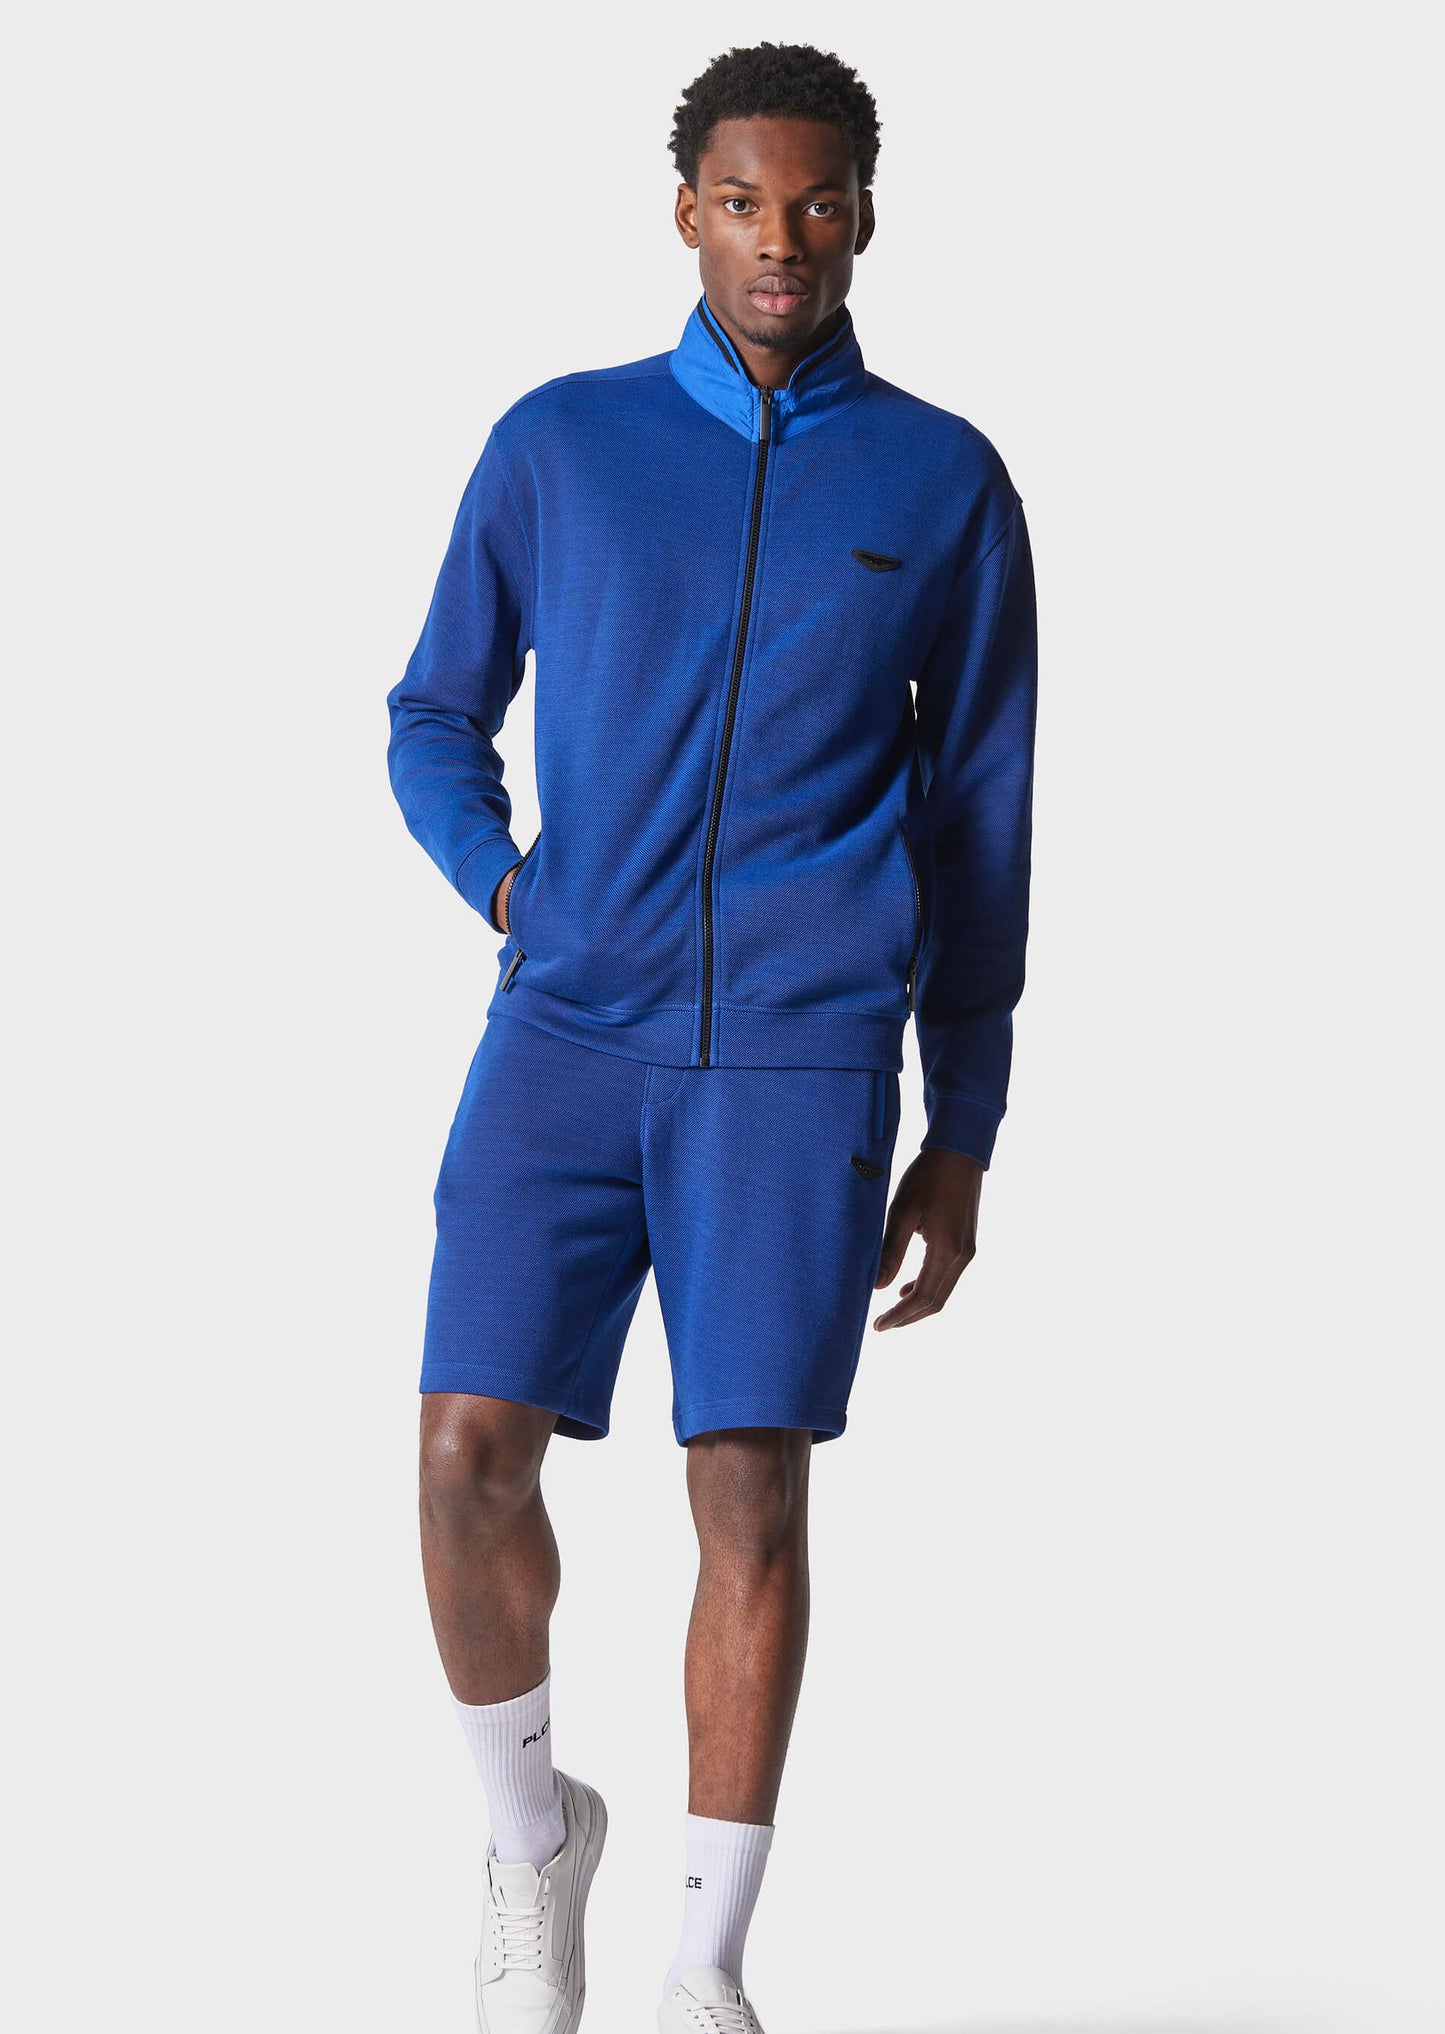 Merson Cobalt Blue Jog Shorts